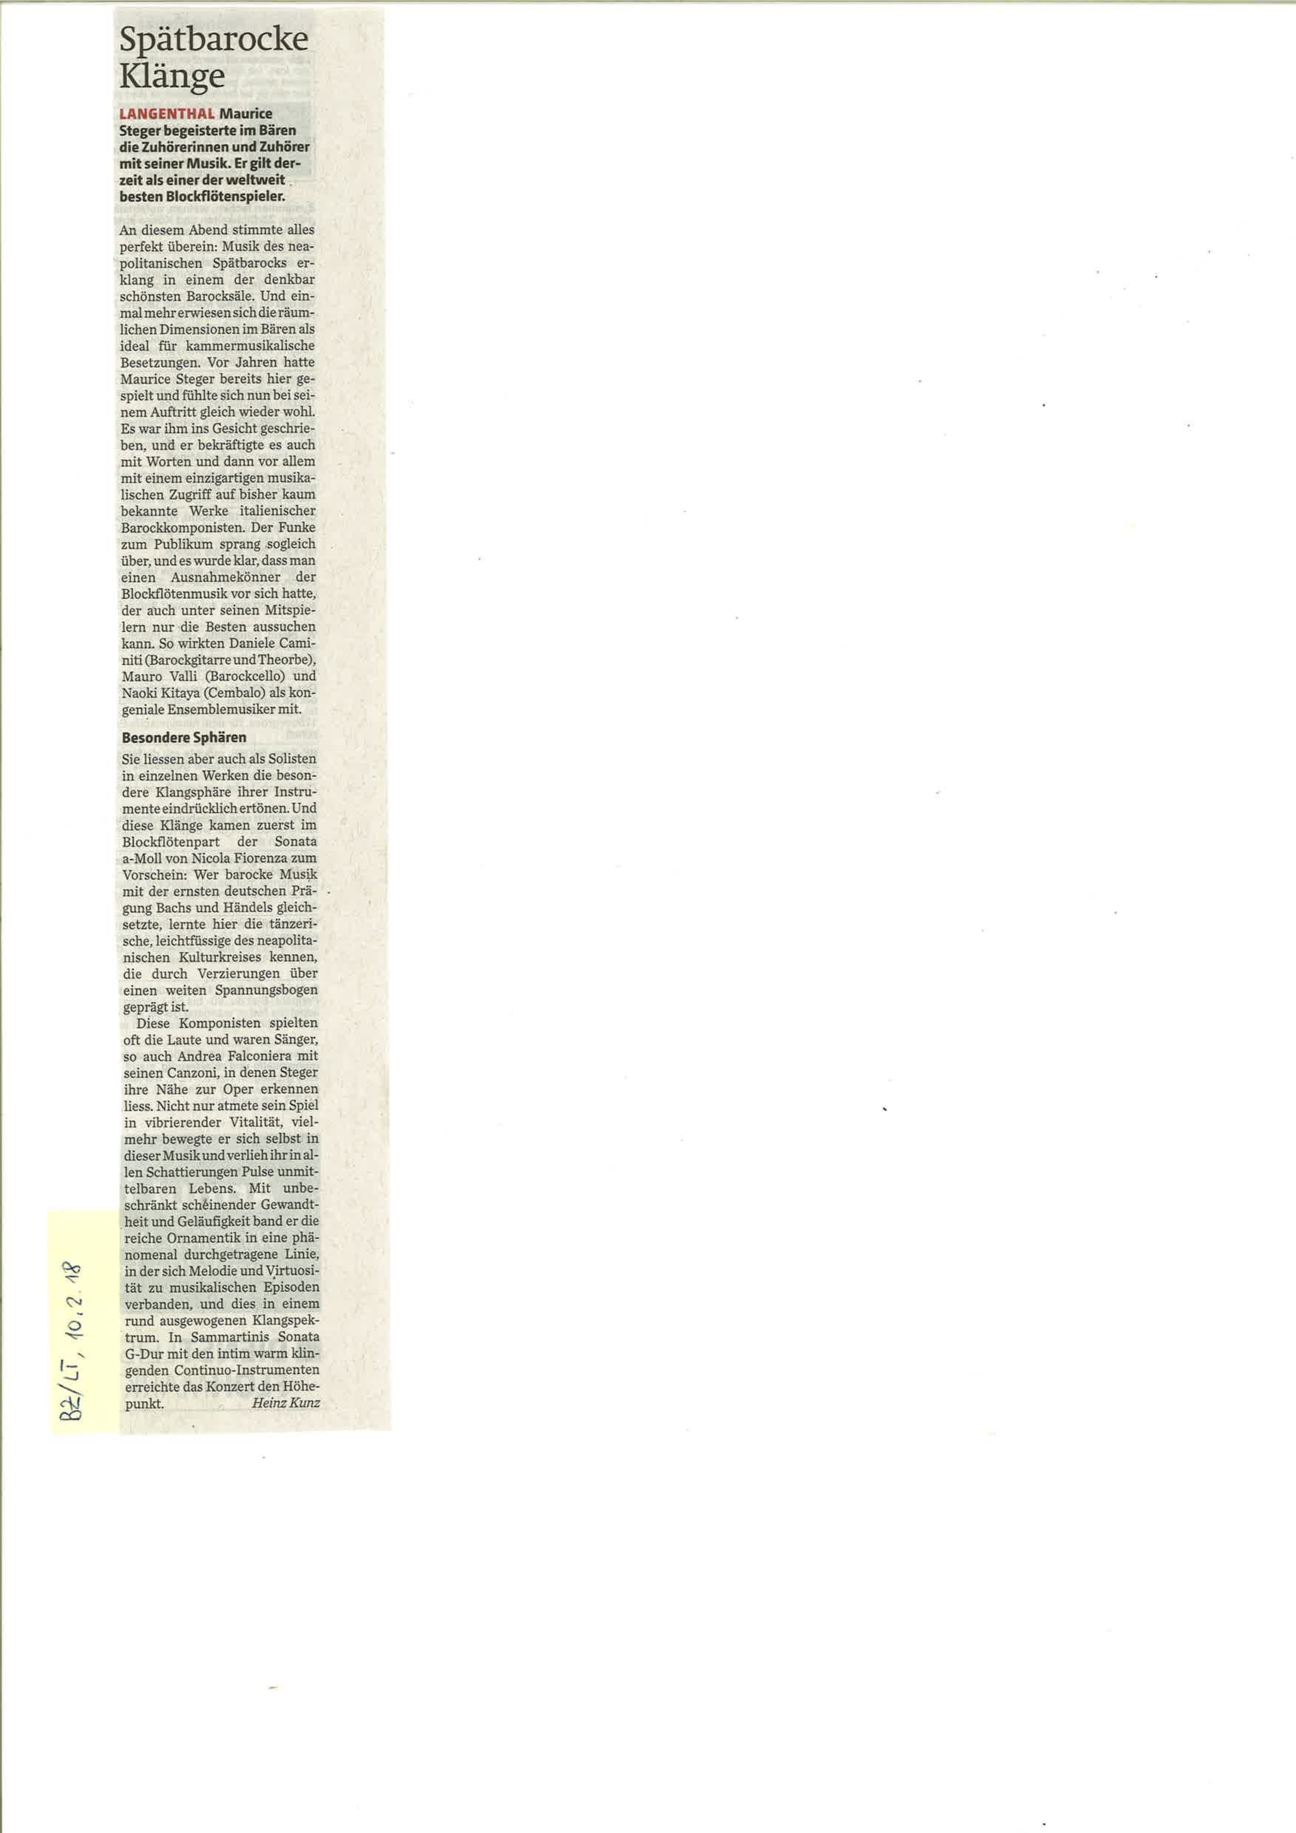 Artikel Berner Zeitung, Langenthaler Tagblatt